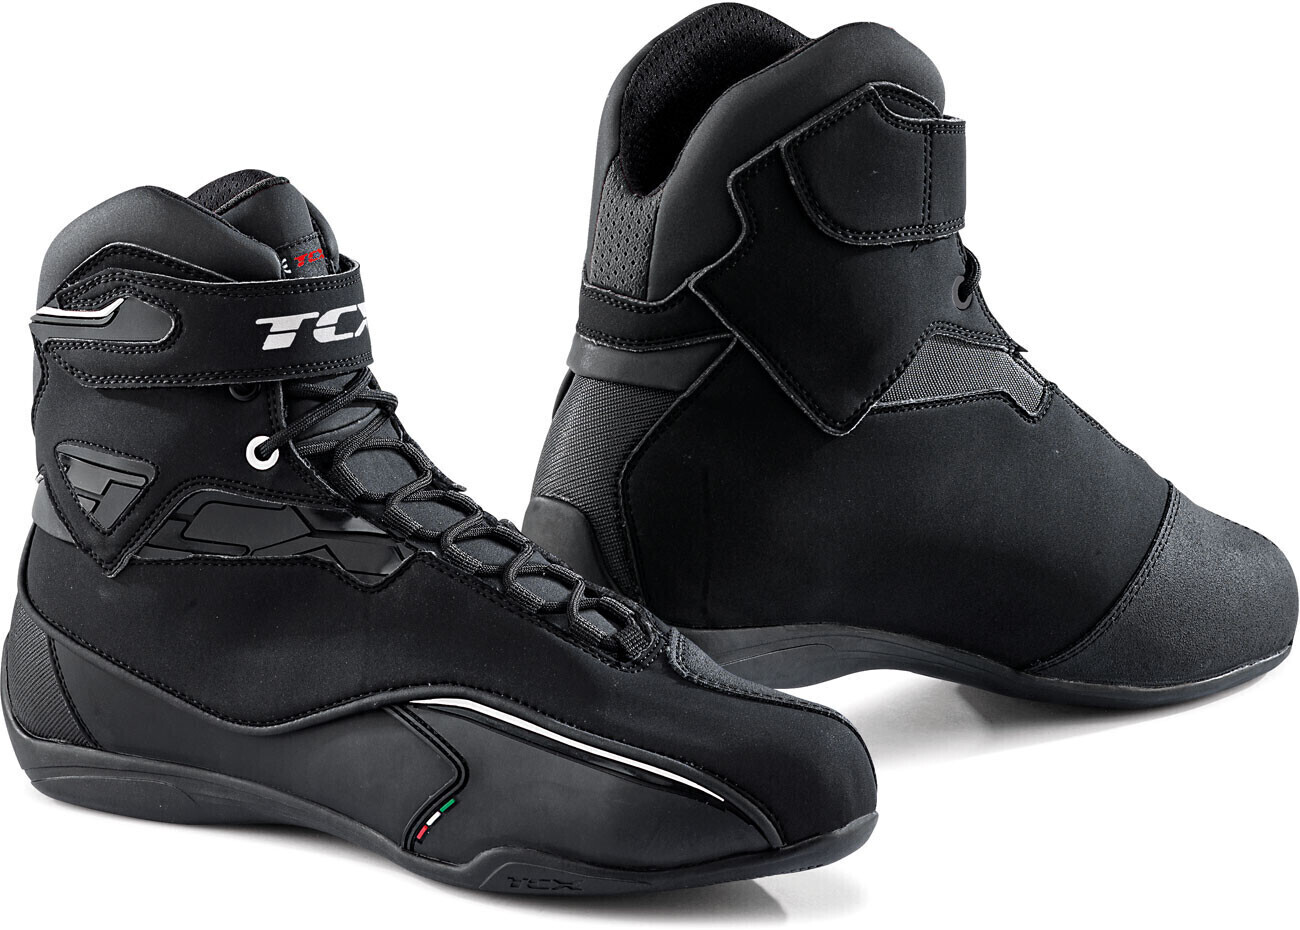 Chaussures Moto Femme Tcx STREET 3 LADY WP Noir Or Vente en Ligne 